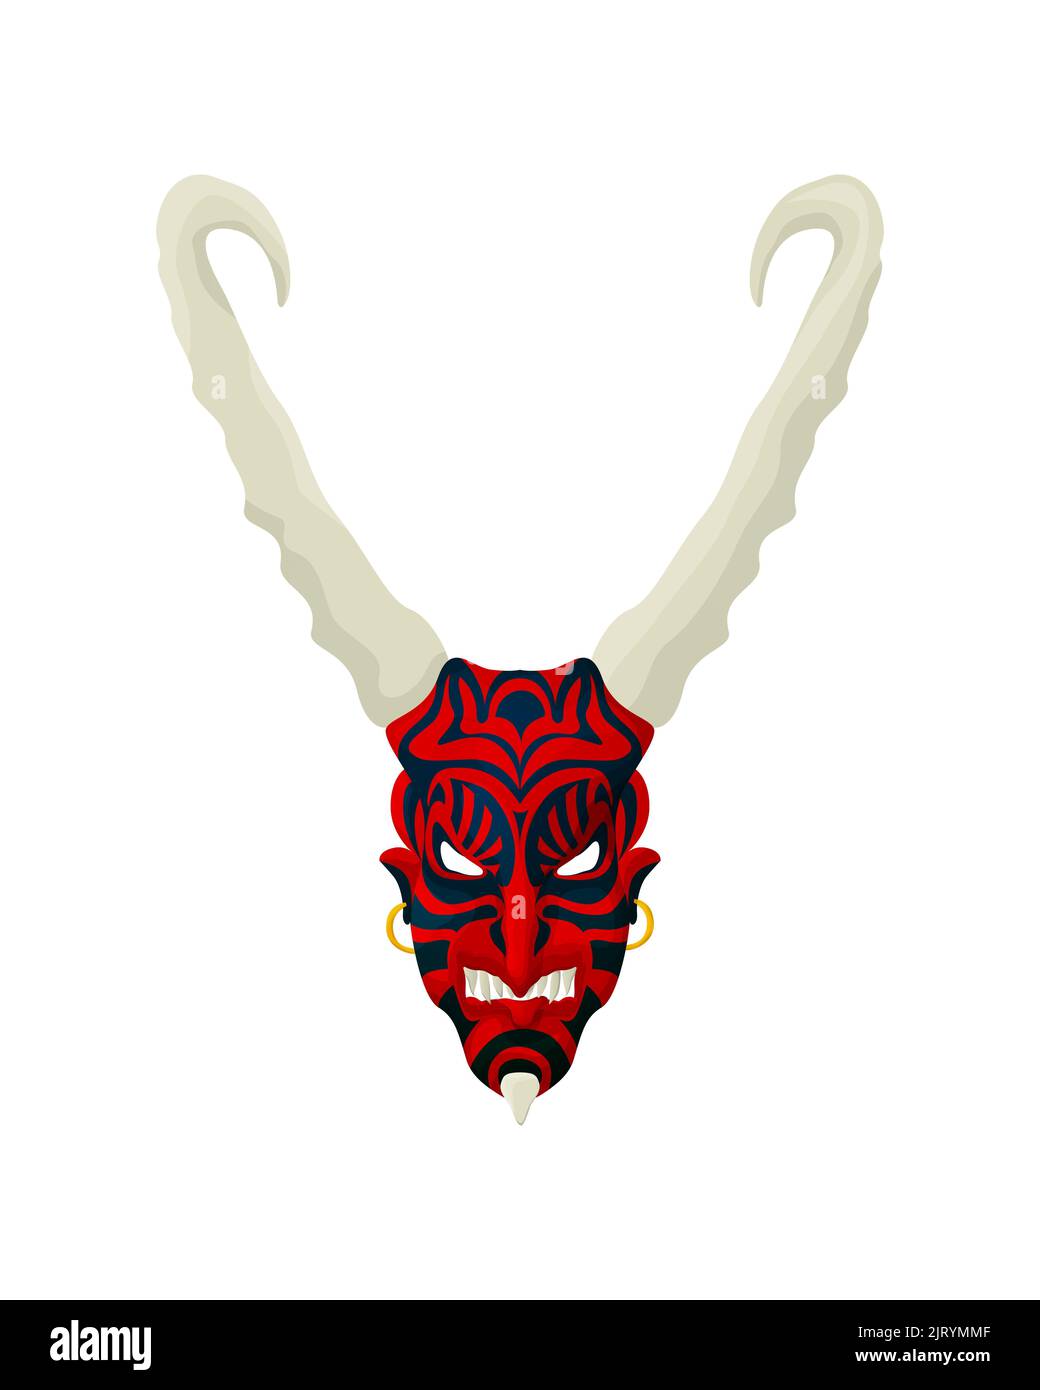 Vector masque tribal, objet isolé sur fond blanc Banque D'Images